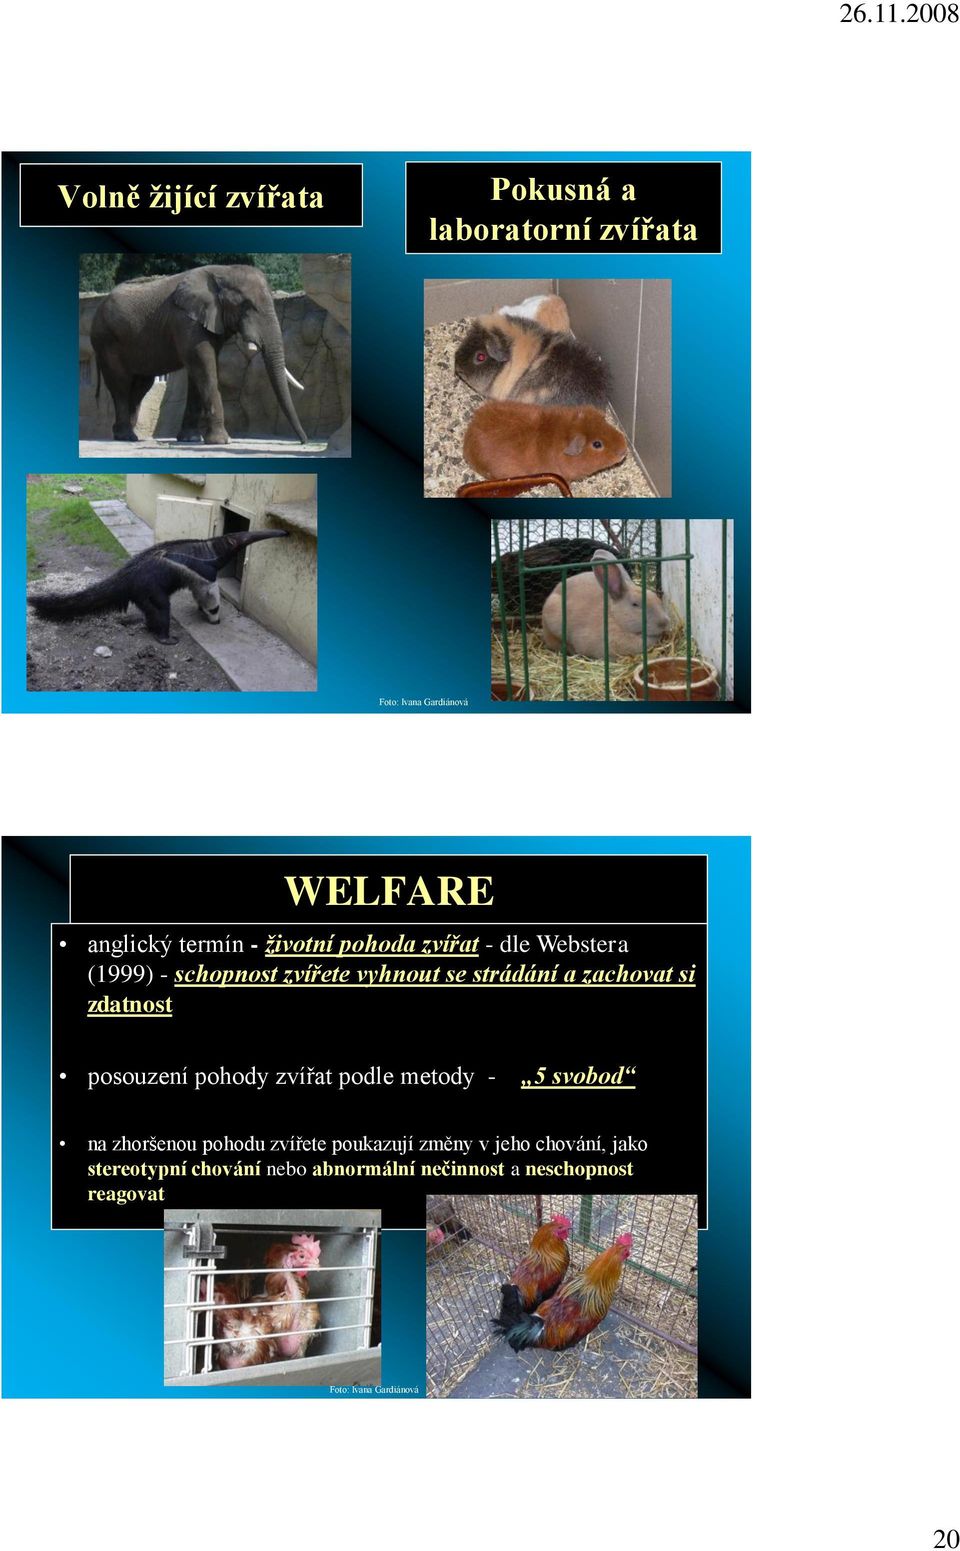 zdatnost posouzení pohody zvířat podle metody - 5 svobod na zhoršenou pohodu zvířete poukazují změny v